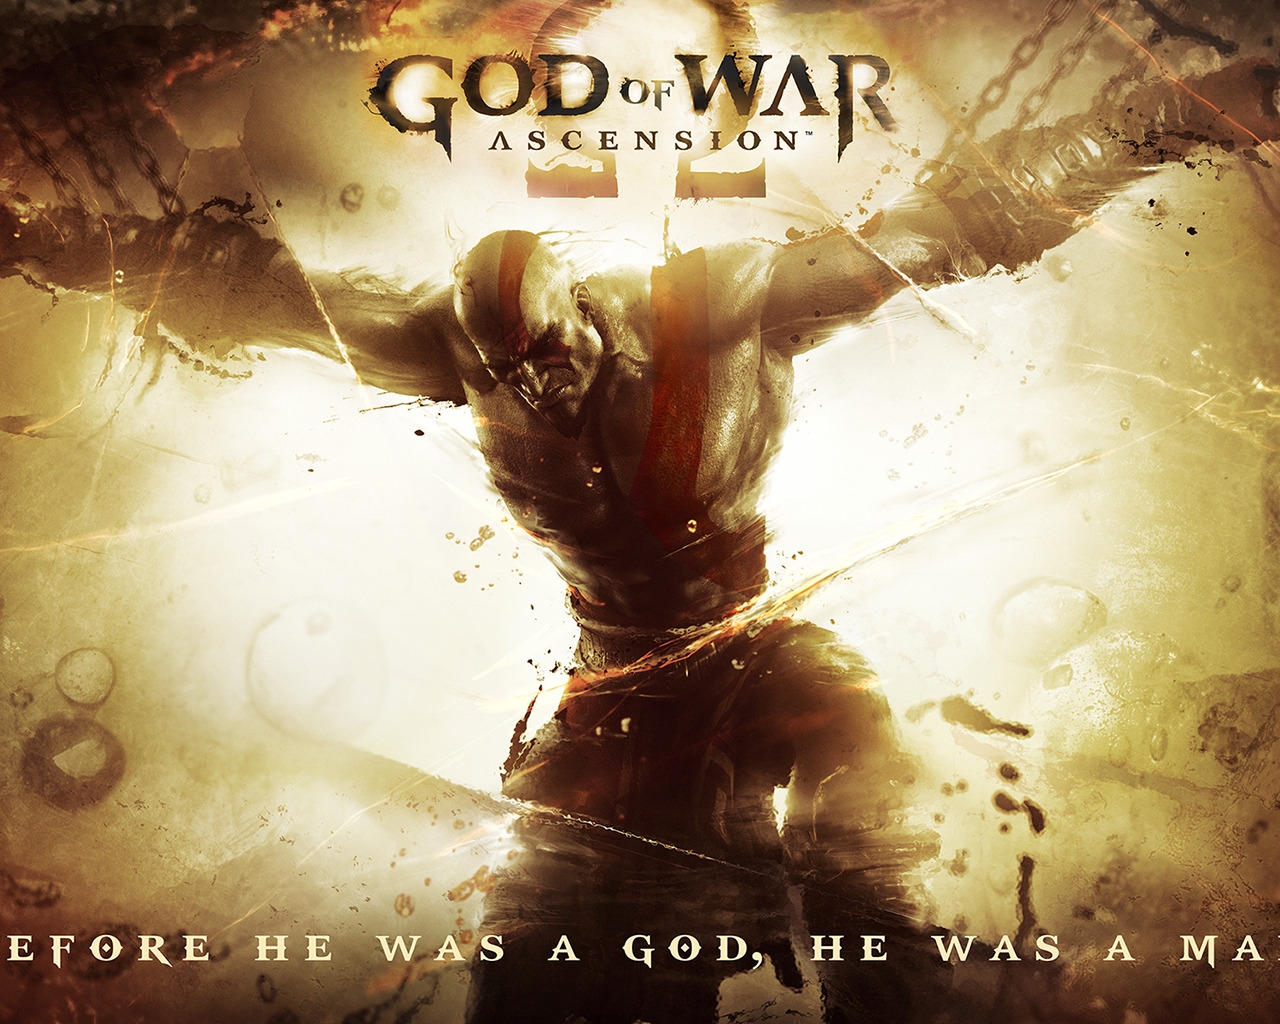 God of War Ascension 2013 for 1280 x 1024 resolution